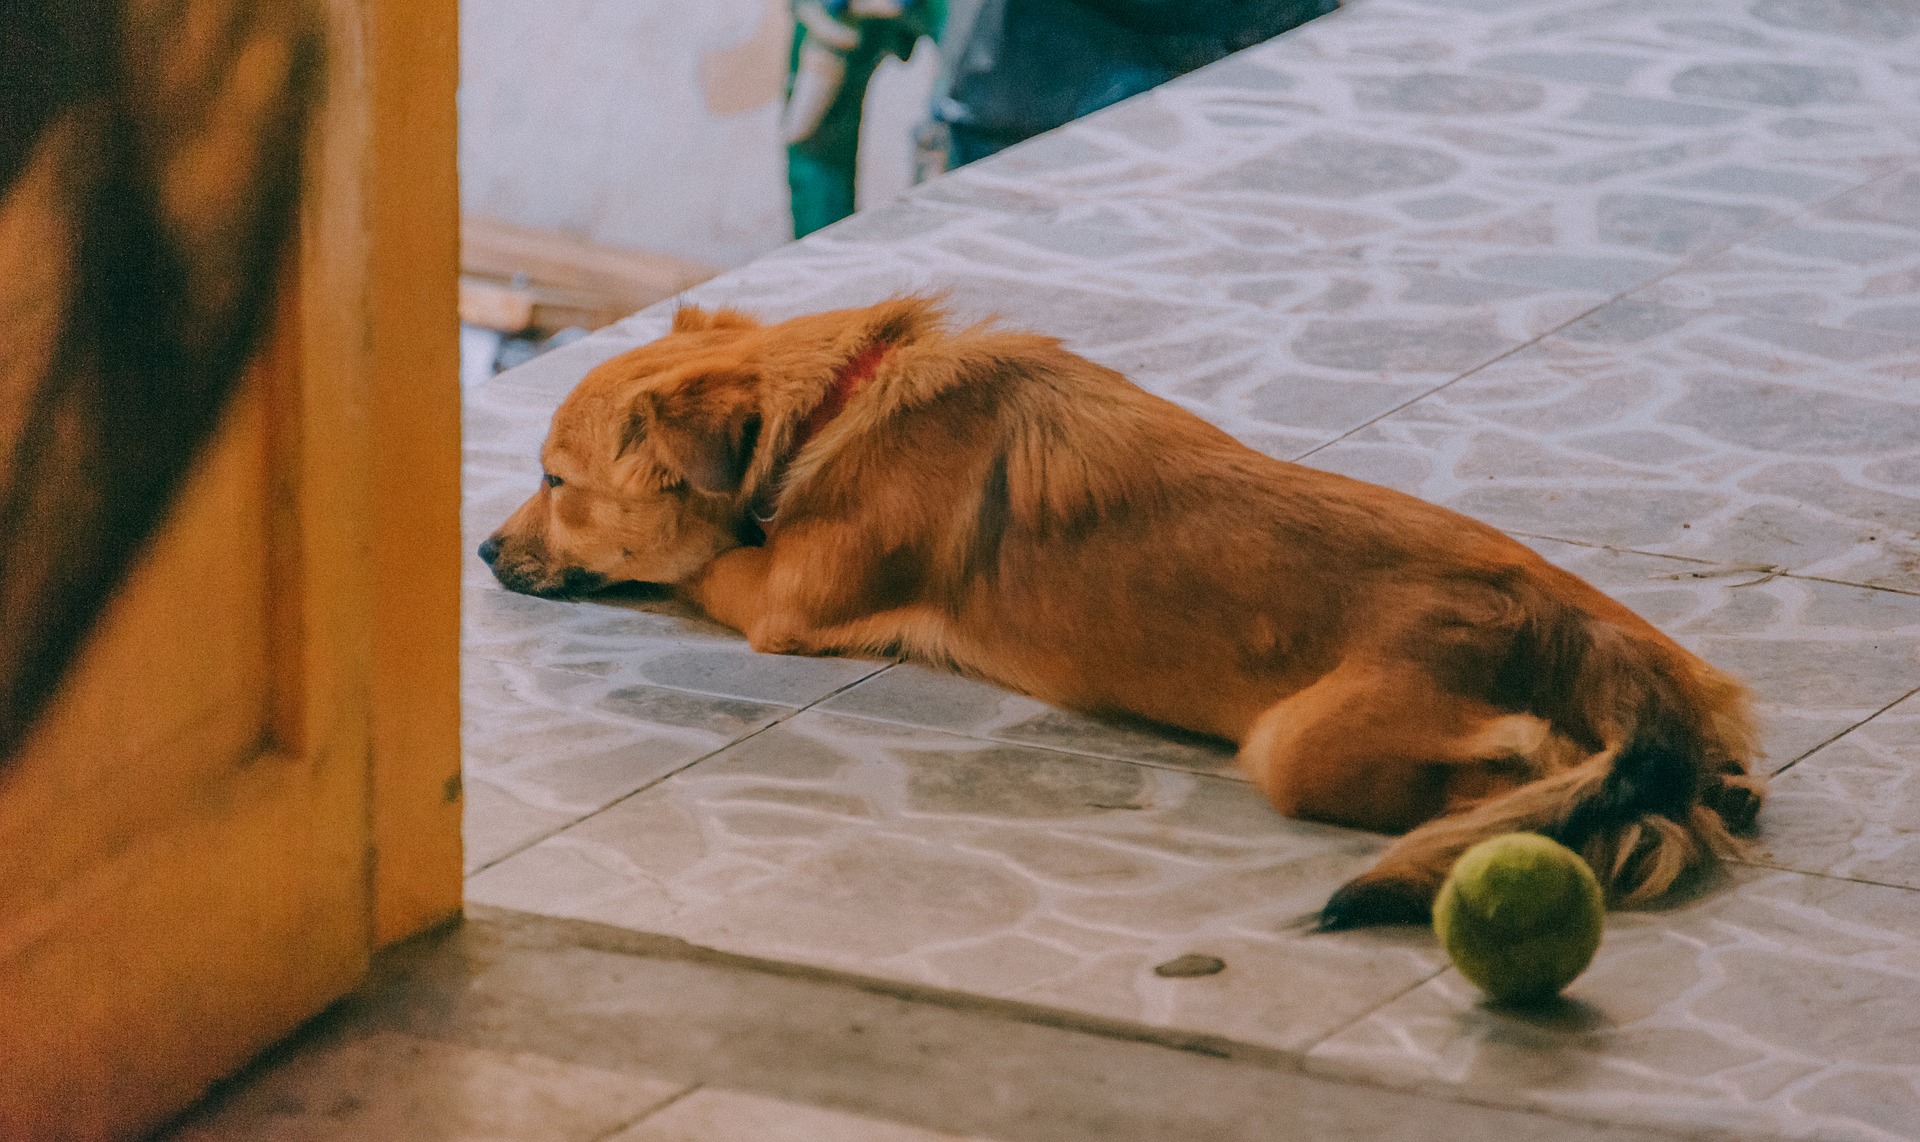 Die häufigsten Ursachen für Husten bei einem Hund sind Erkältungen und Entzündungen der oberen Atemwege. Dies geschieht - genau wie beim Menschen - beim Einweichen und Überkühlen des Körpers, was die Vermehrung pathogener Mikroorganismen ermöglicht.